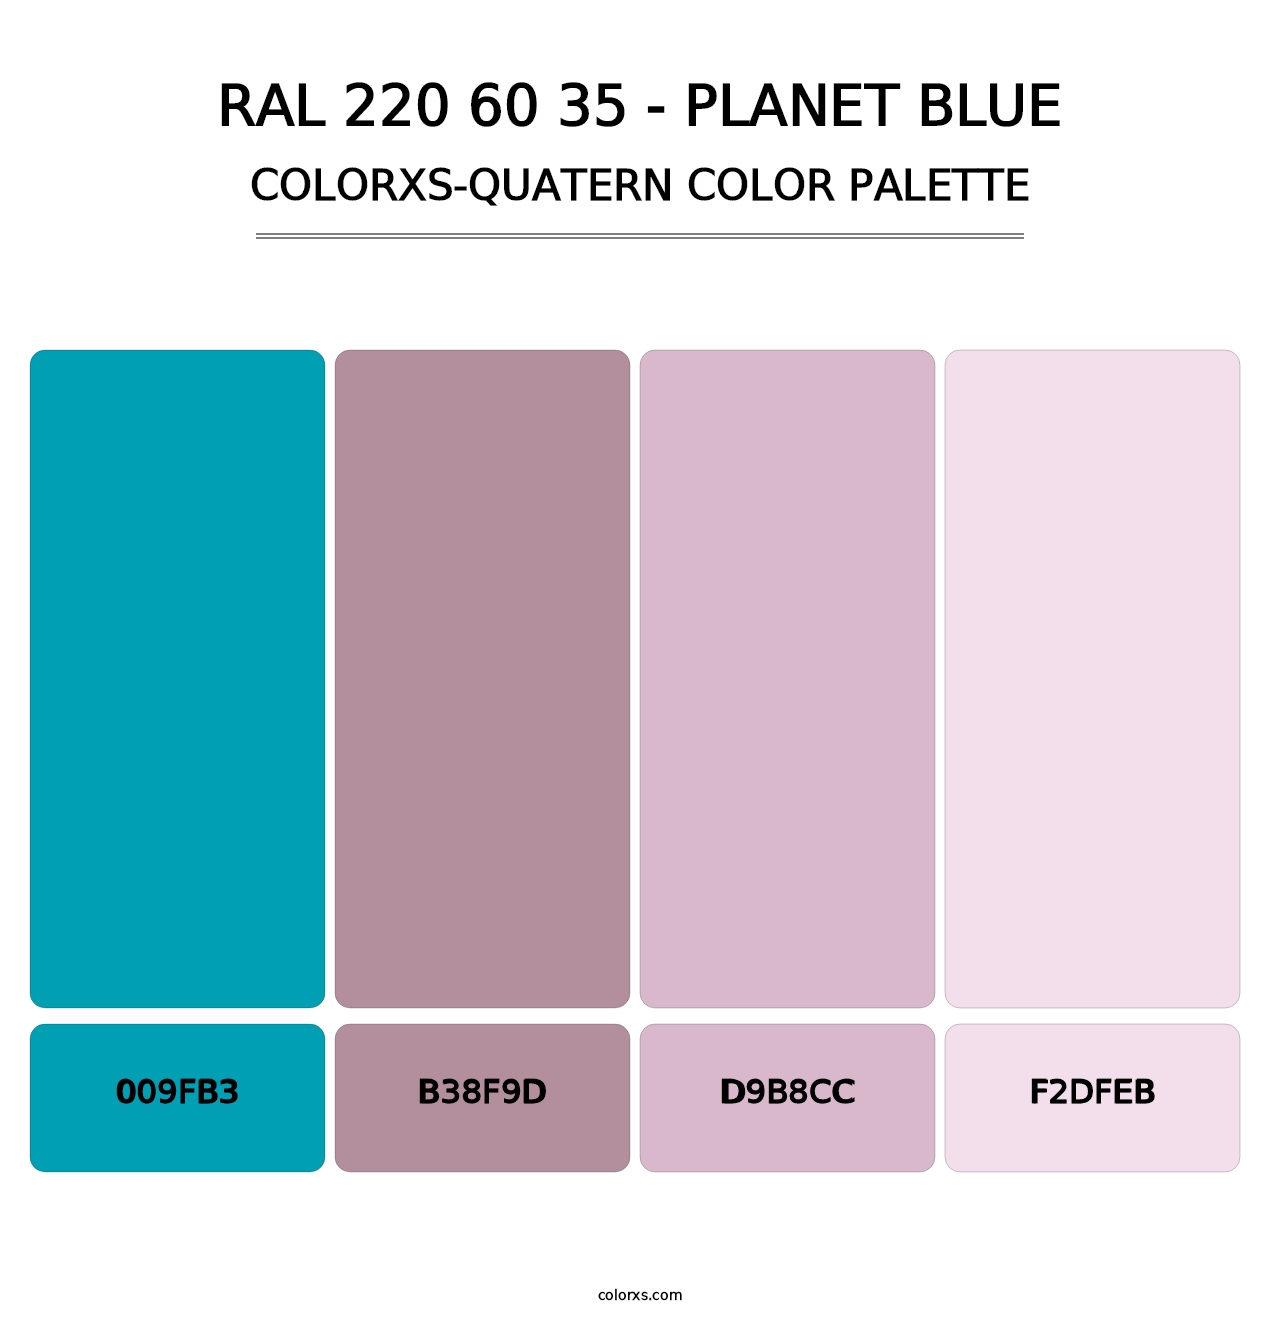 RAL 220 60 35 - Planet Blue - Colorxs Quatern Palette